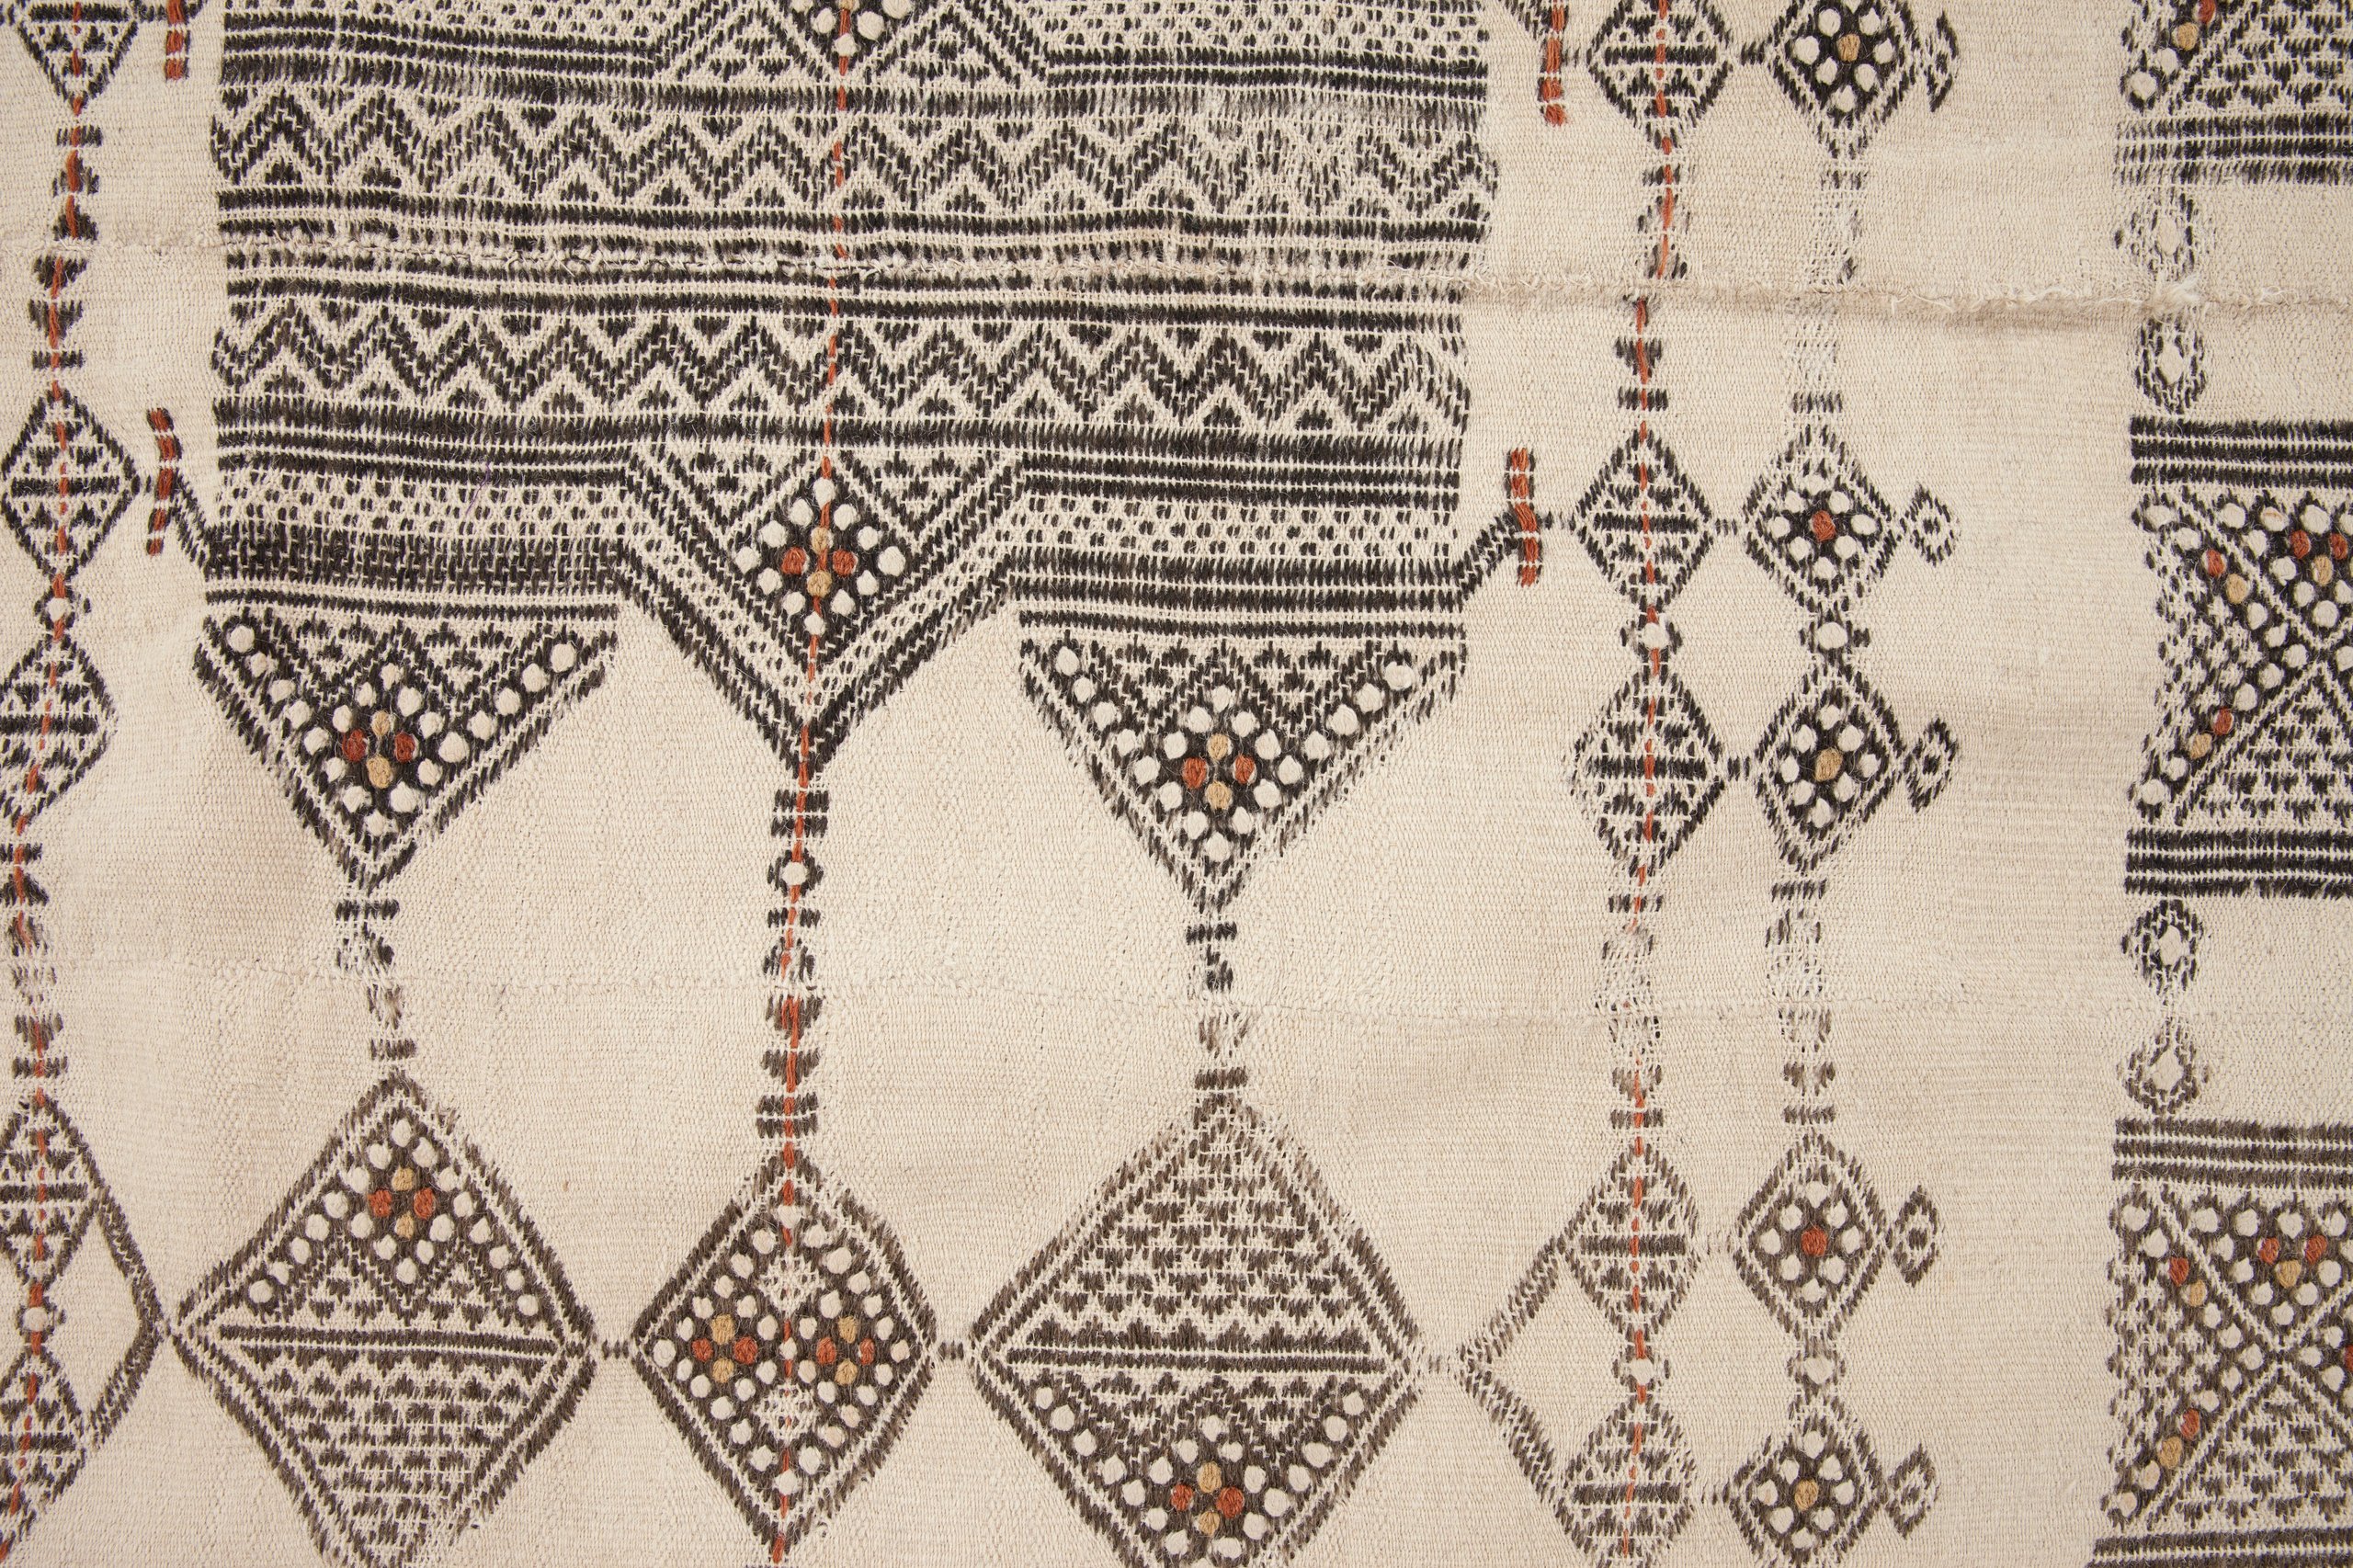 Fulani blanket or khasa from Mali, West Africa